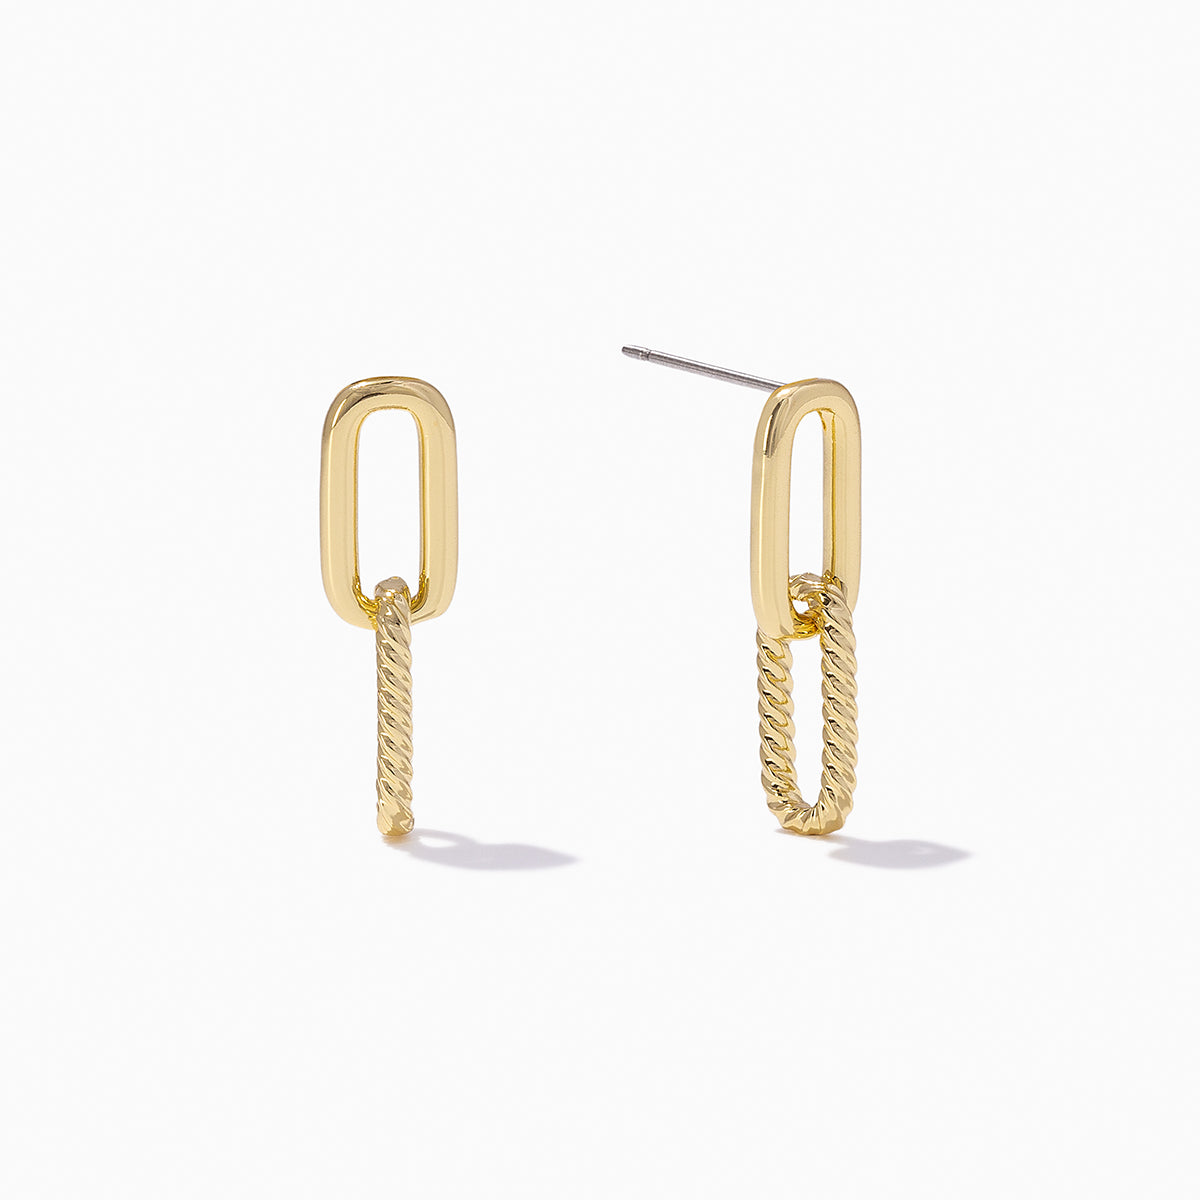 Double Cuff Triple Cross Chain Earring: Kpop Earring – Impulse Notion